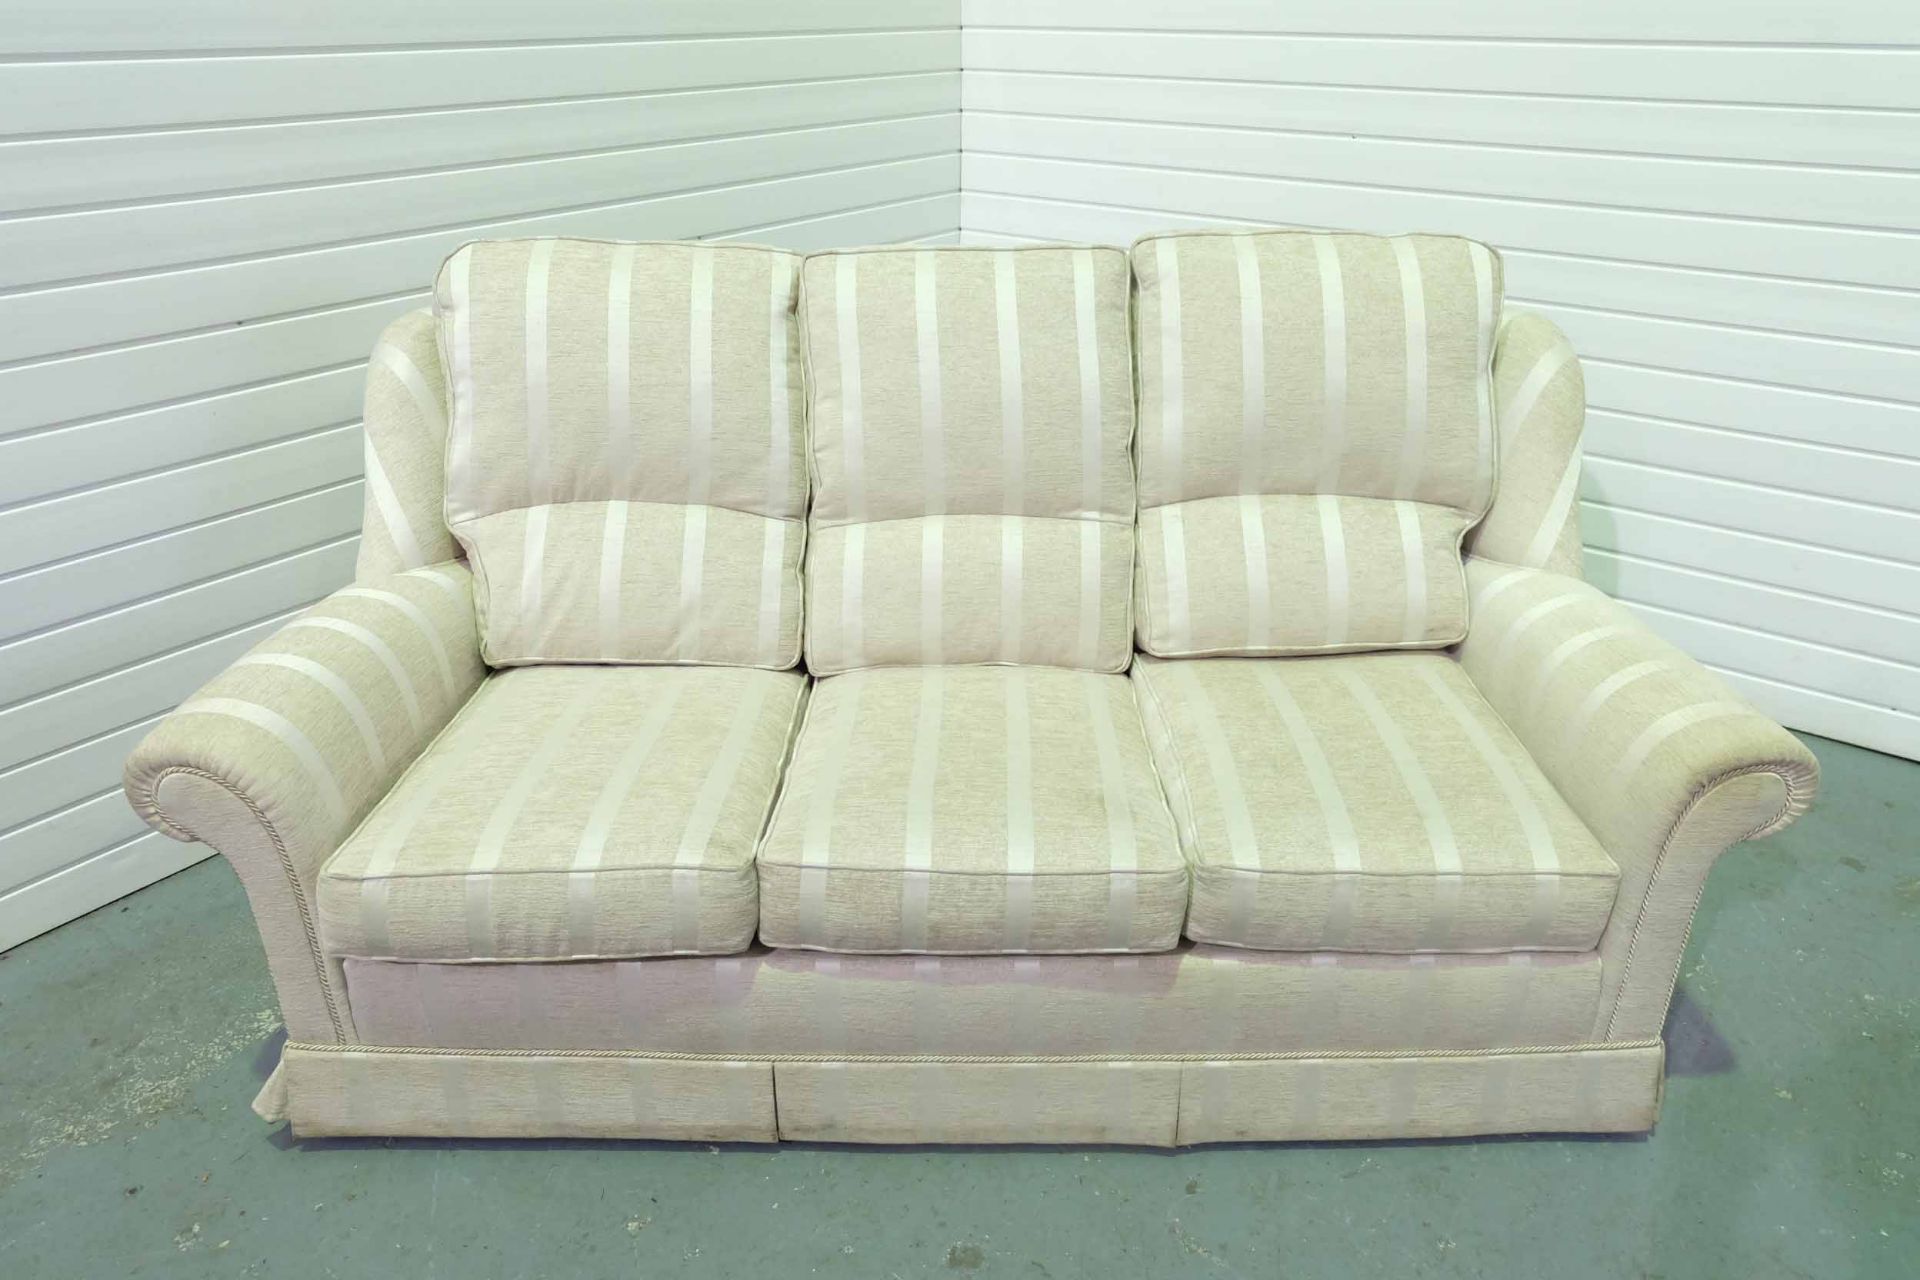 Steed Upholstery 'Hamilton' Range Fully Handmade 3 Seater Sofa. With Valance.